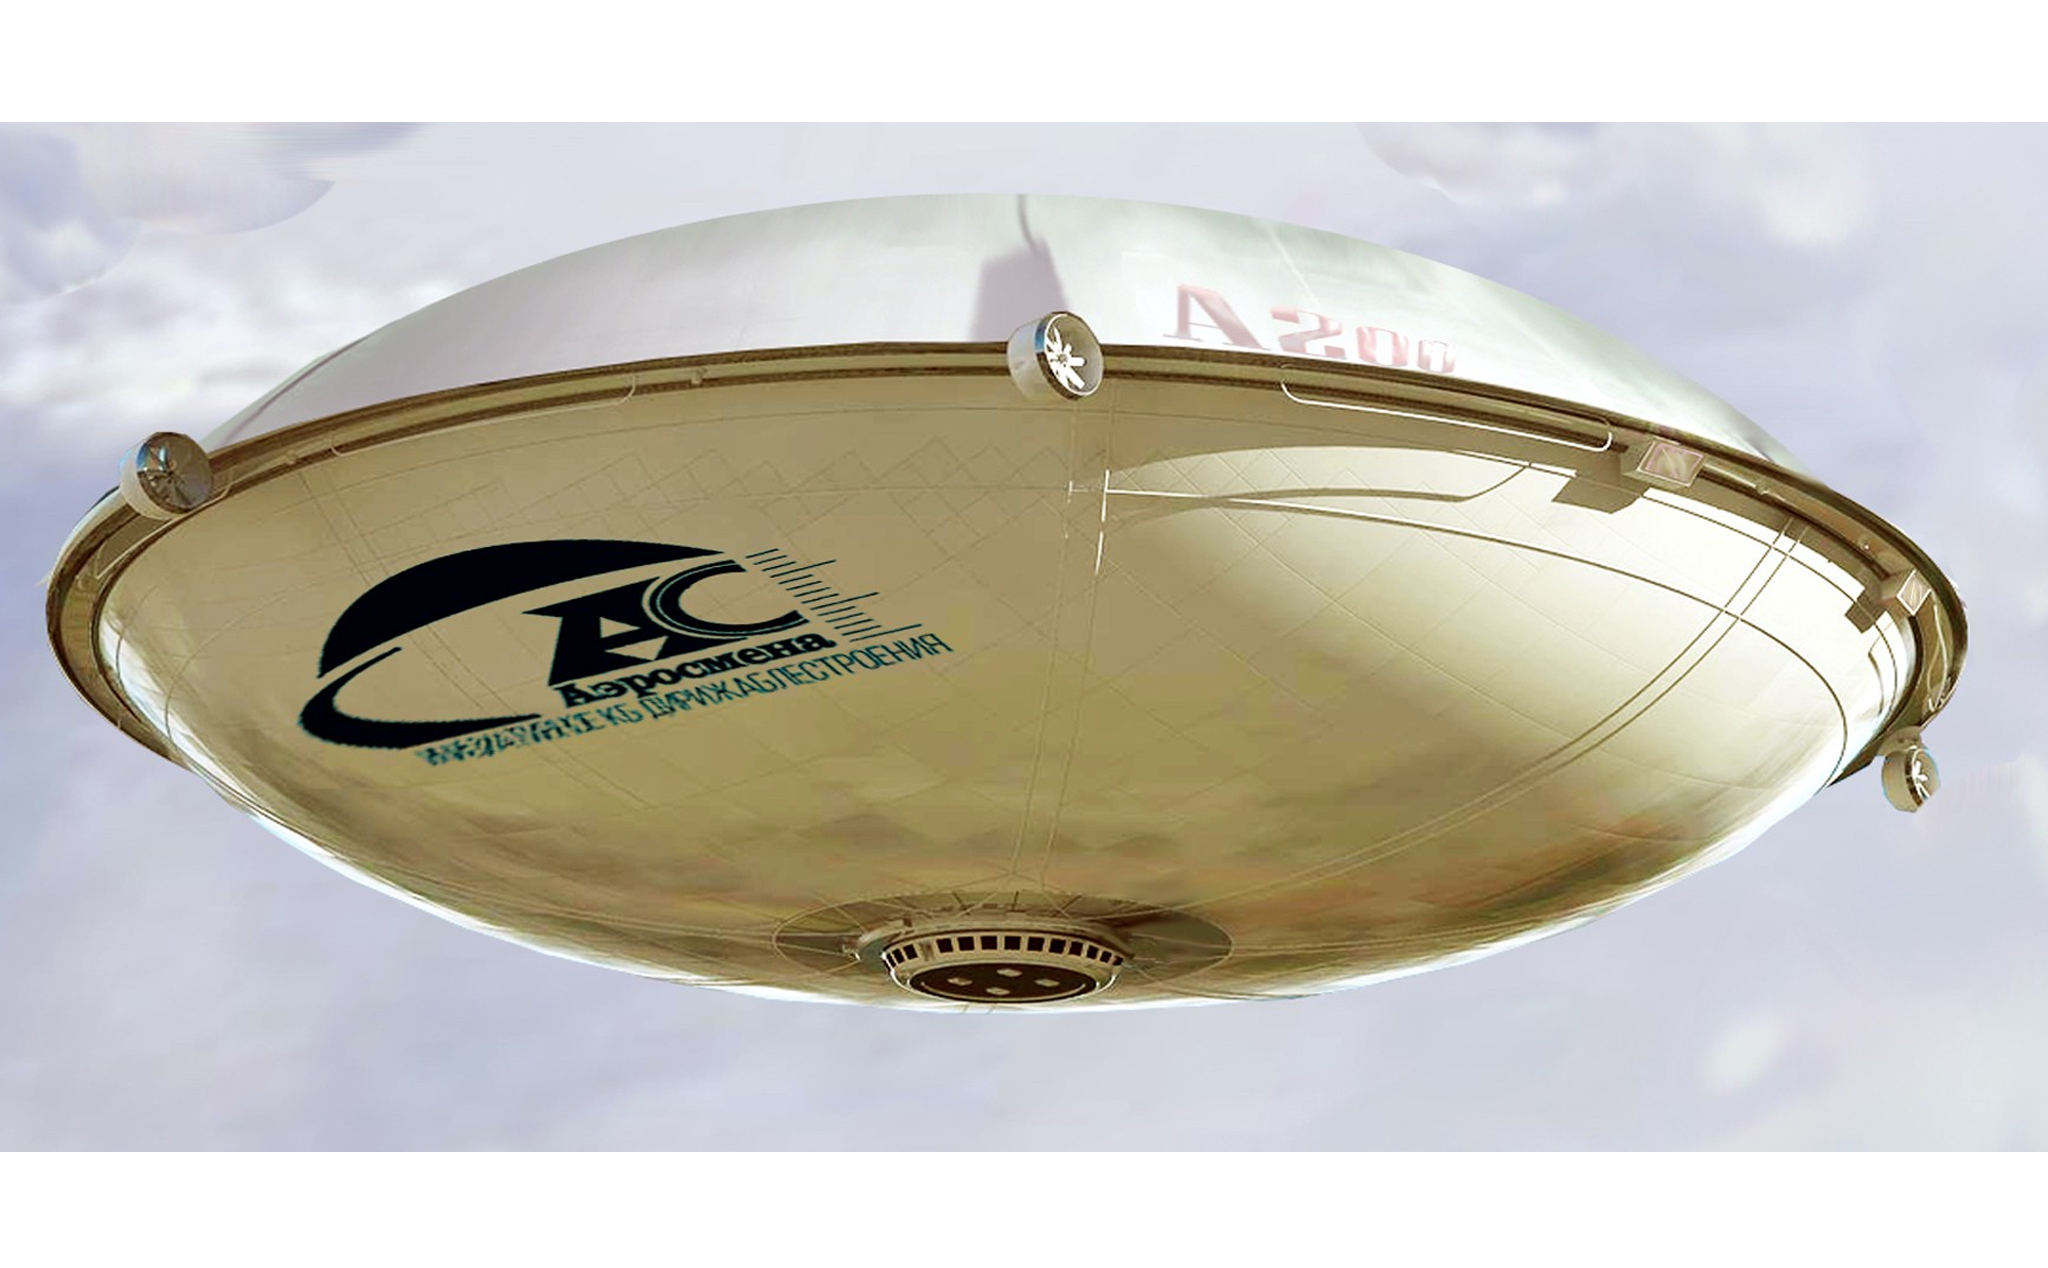 Đây là khí cầu chở hàng năm 2024, trọng tải lên tới 600 tấn, nhìn giống UFO